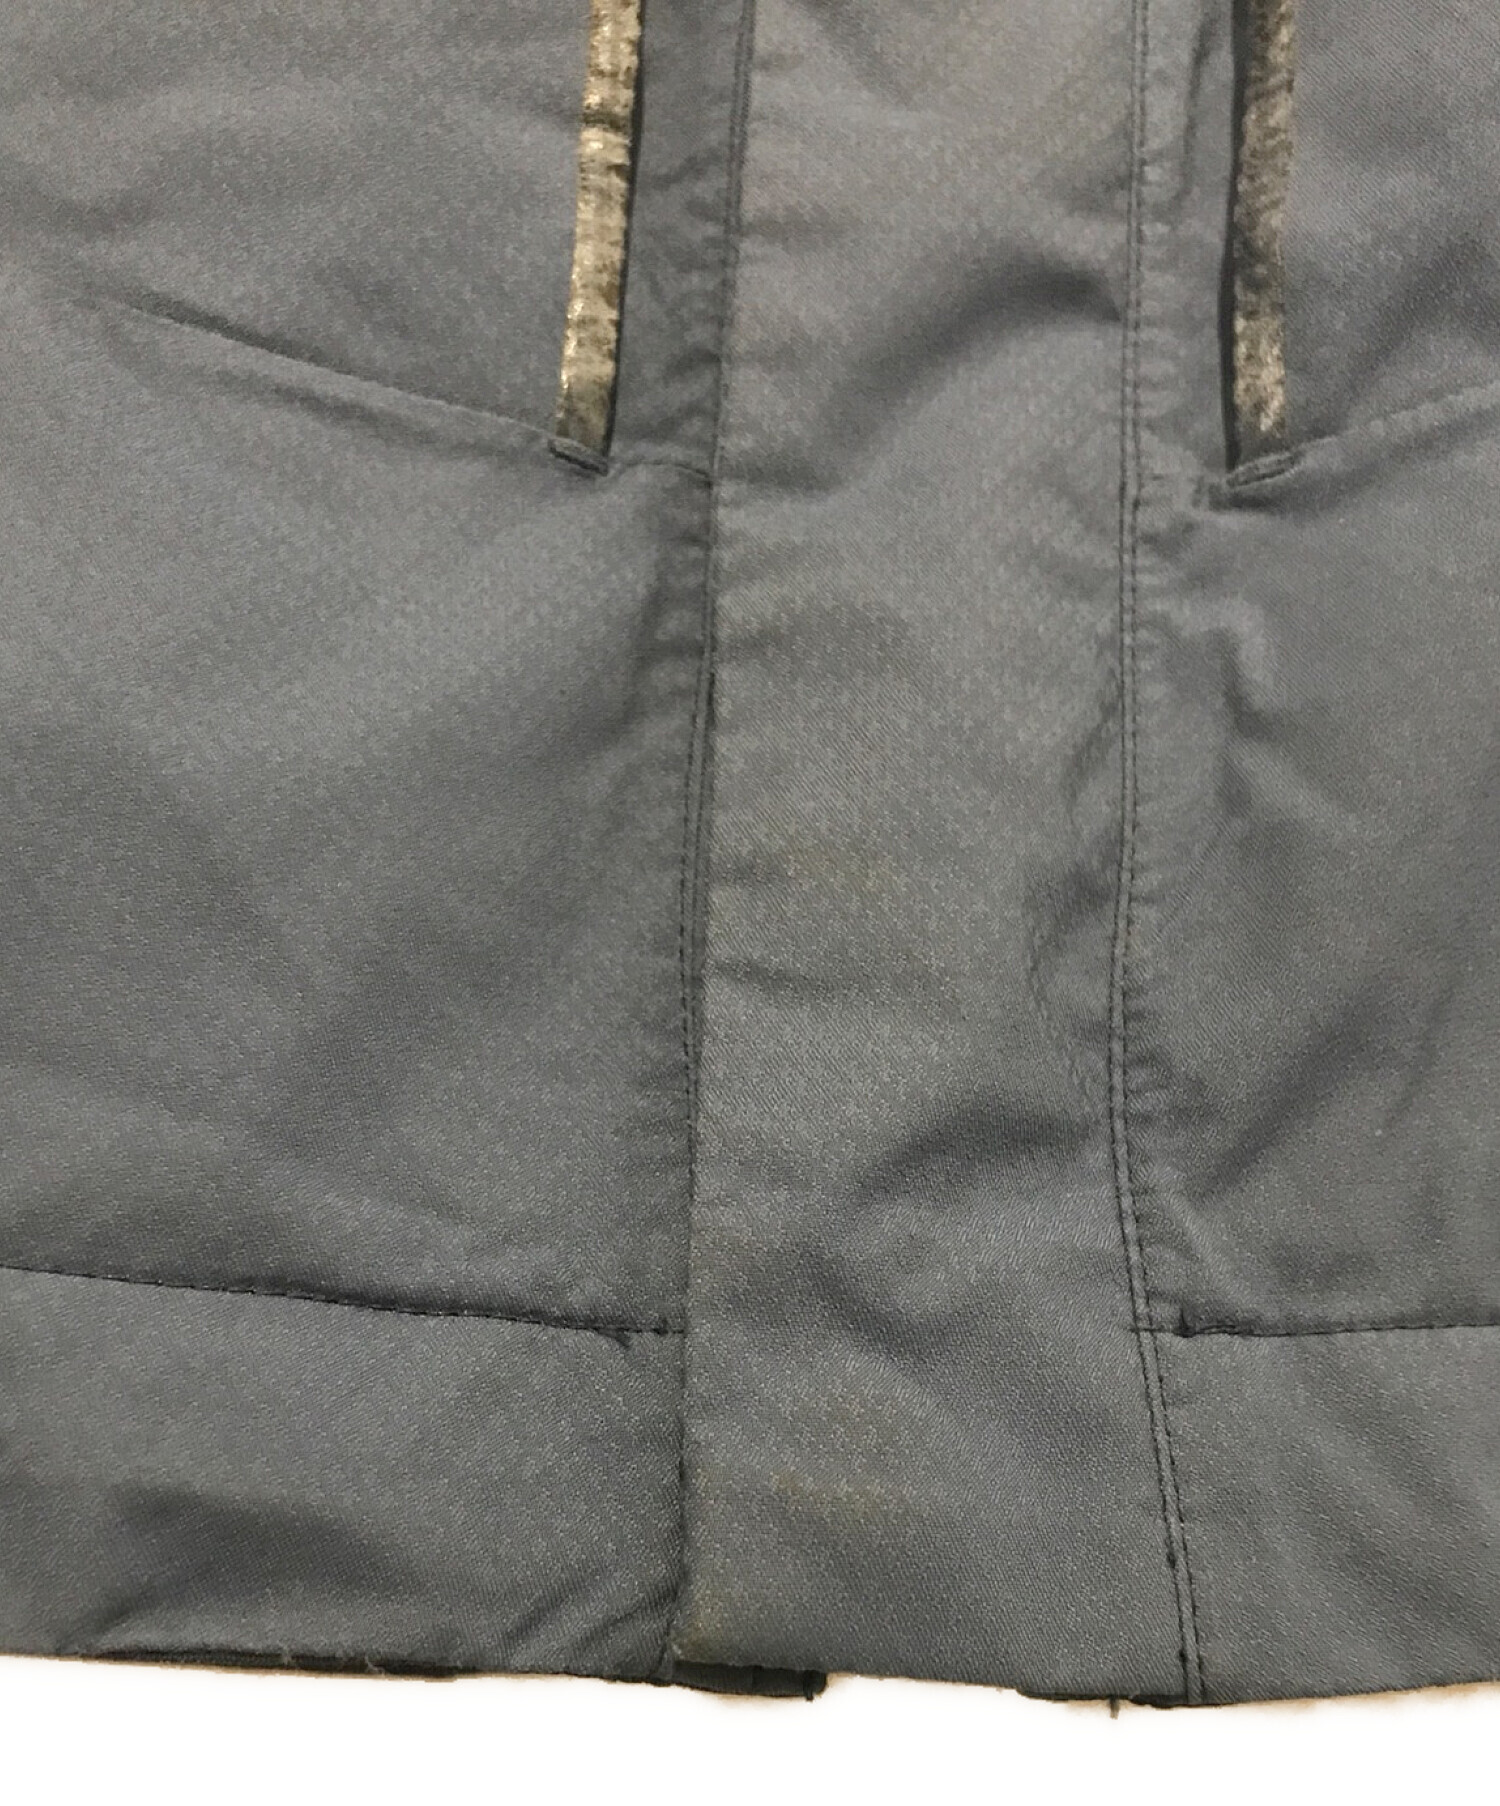 THE NORTH FACE (ザ ノース フェイス) RTG HyventAlpha Insulation Jacket / RTG  ハイベントアルファ インサレーション ジャケット ブルー サイズ:M